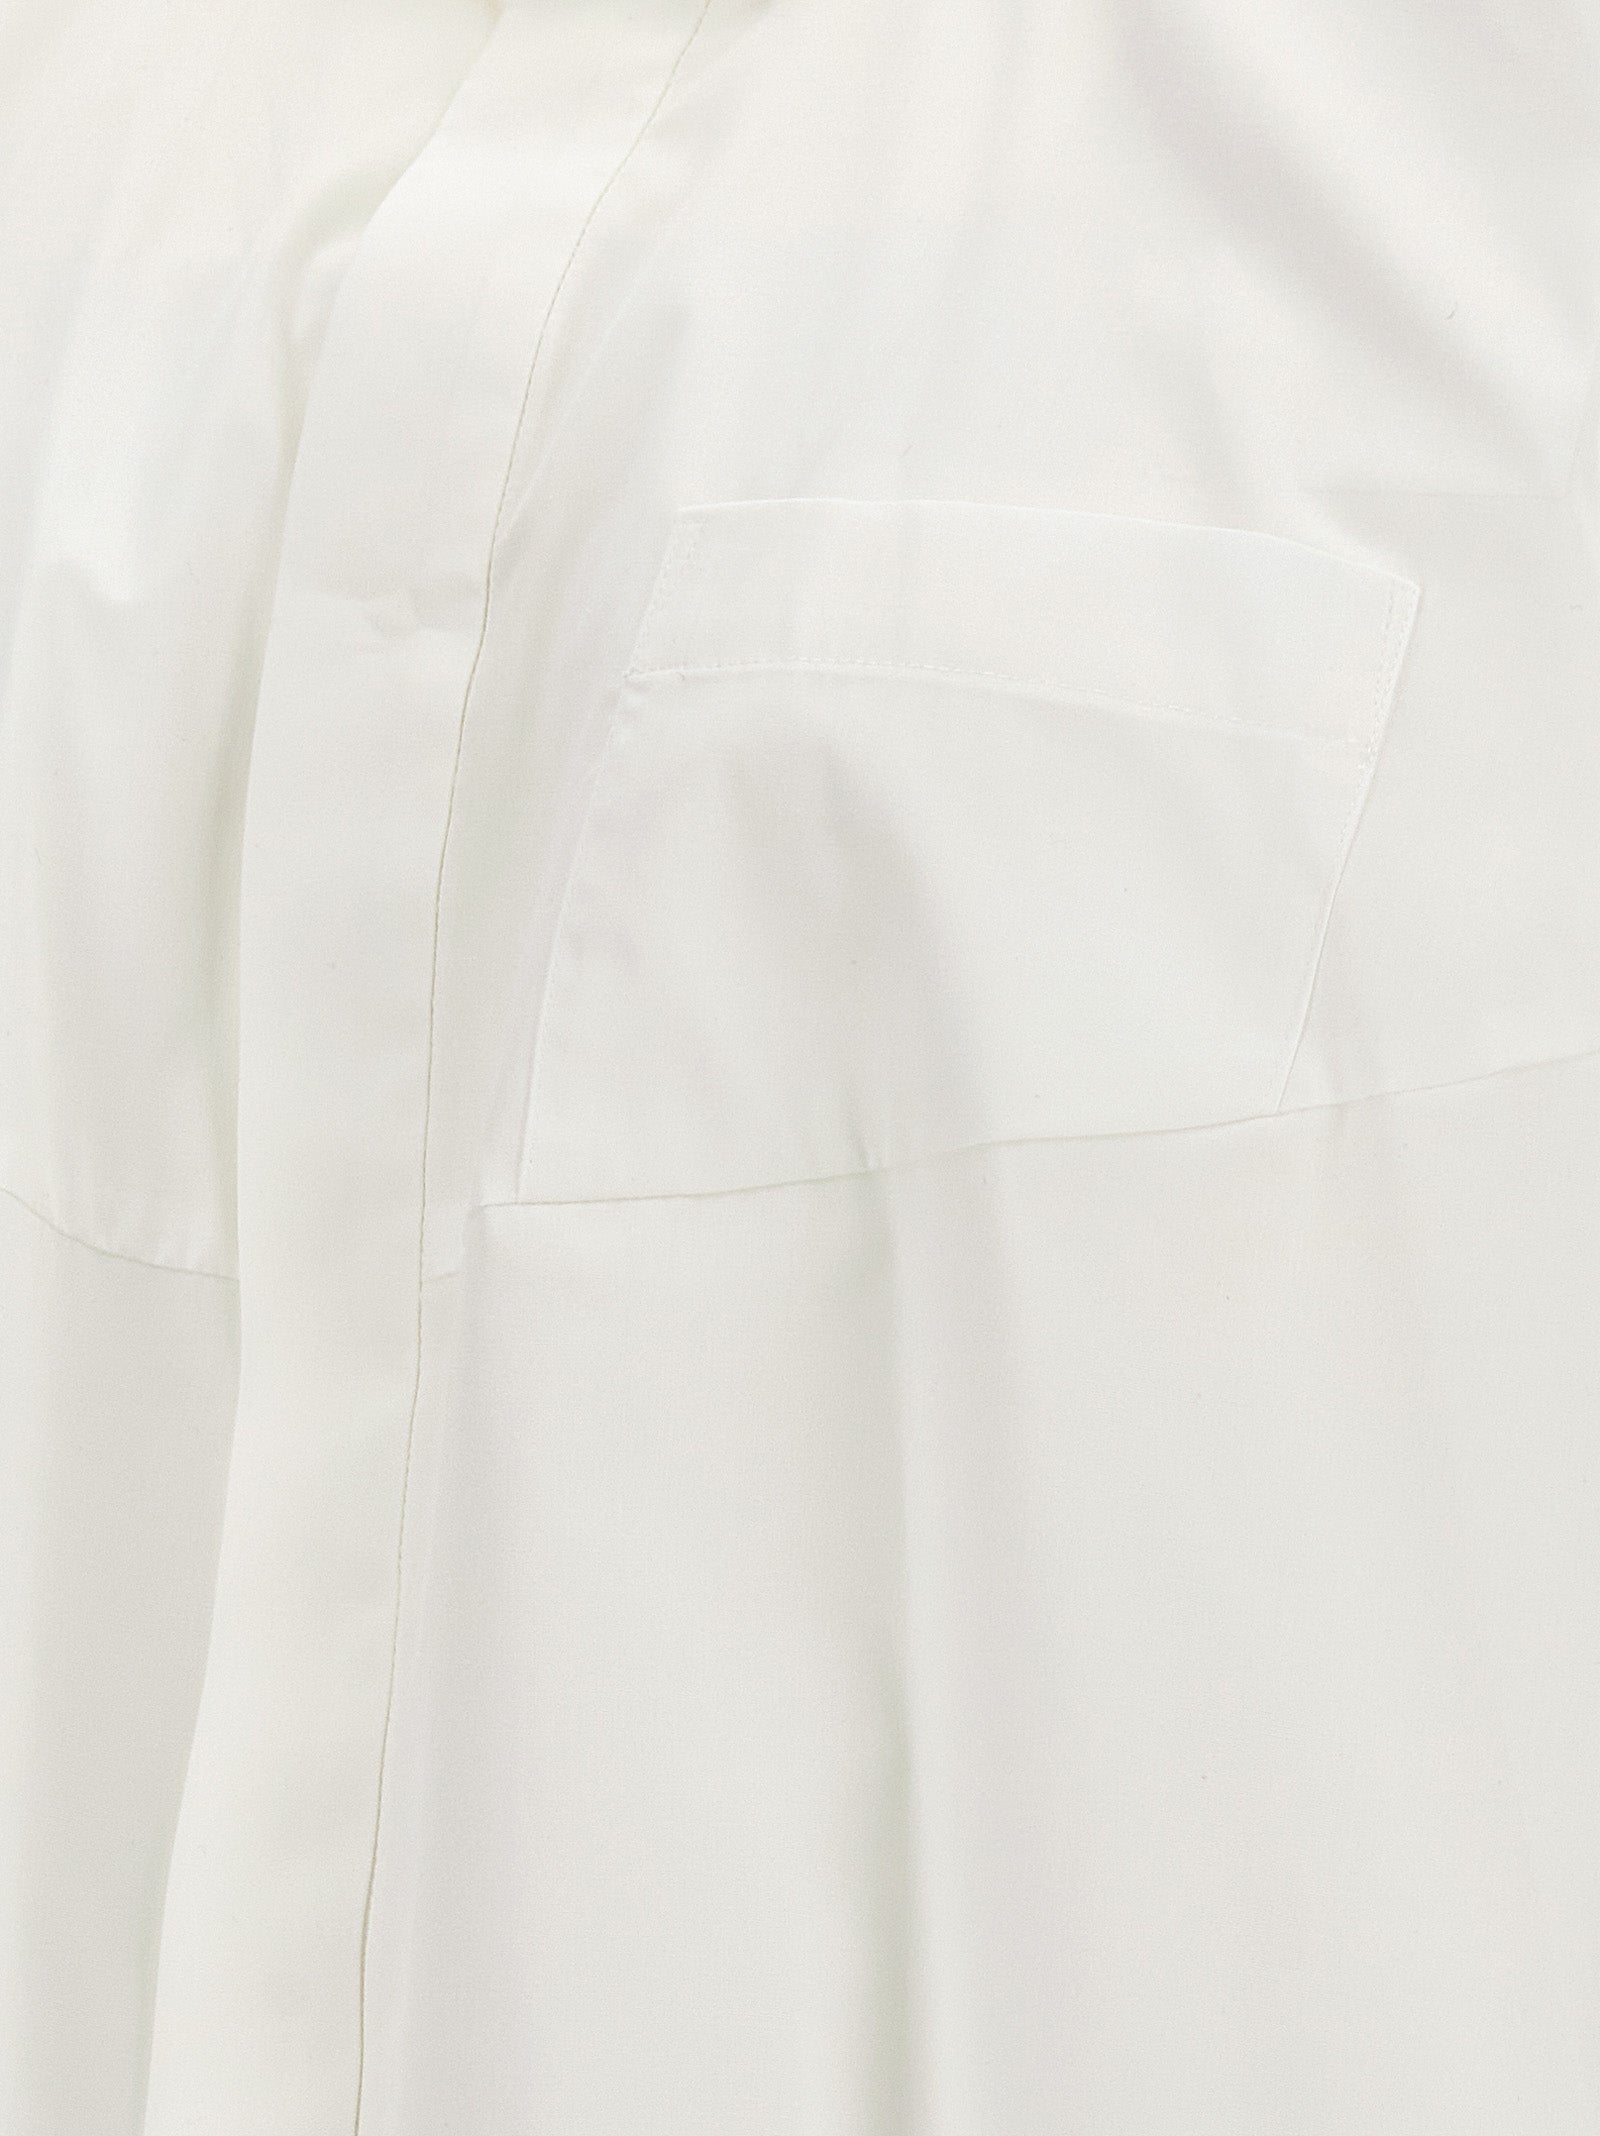 Shop Sacai Poplin Shirt Shirt, Blouse White